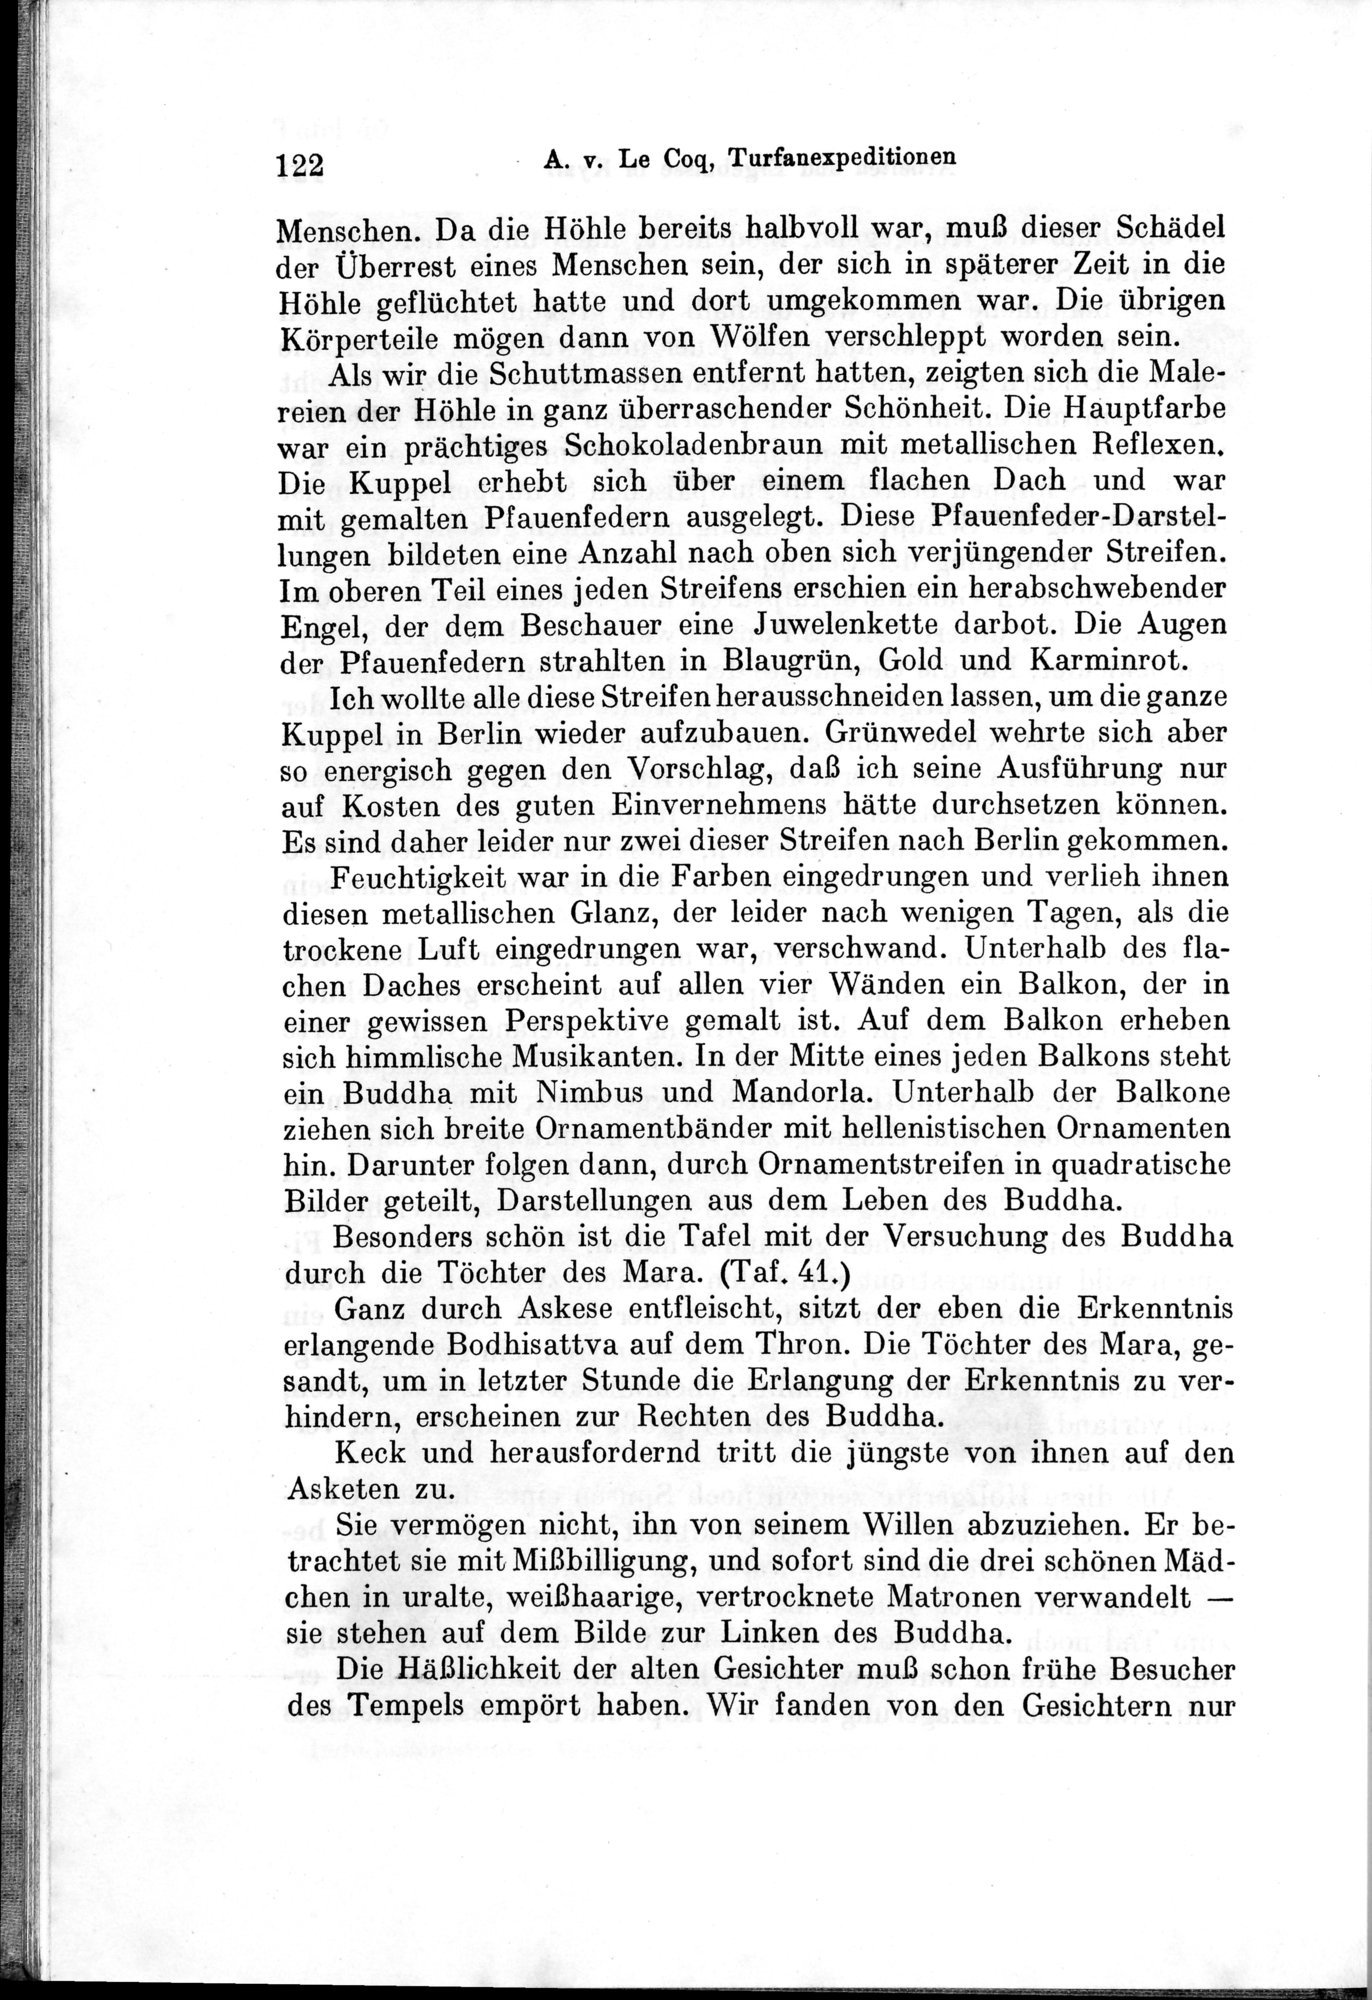 Auf Hellas Spuren in Ostturkistan : vol.1 / Page 178 (Grayscale High Resolution Image)